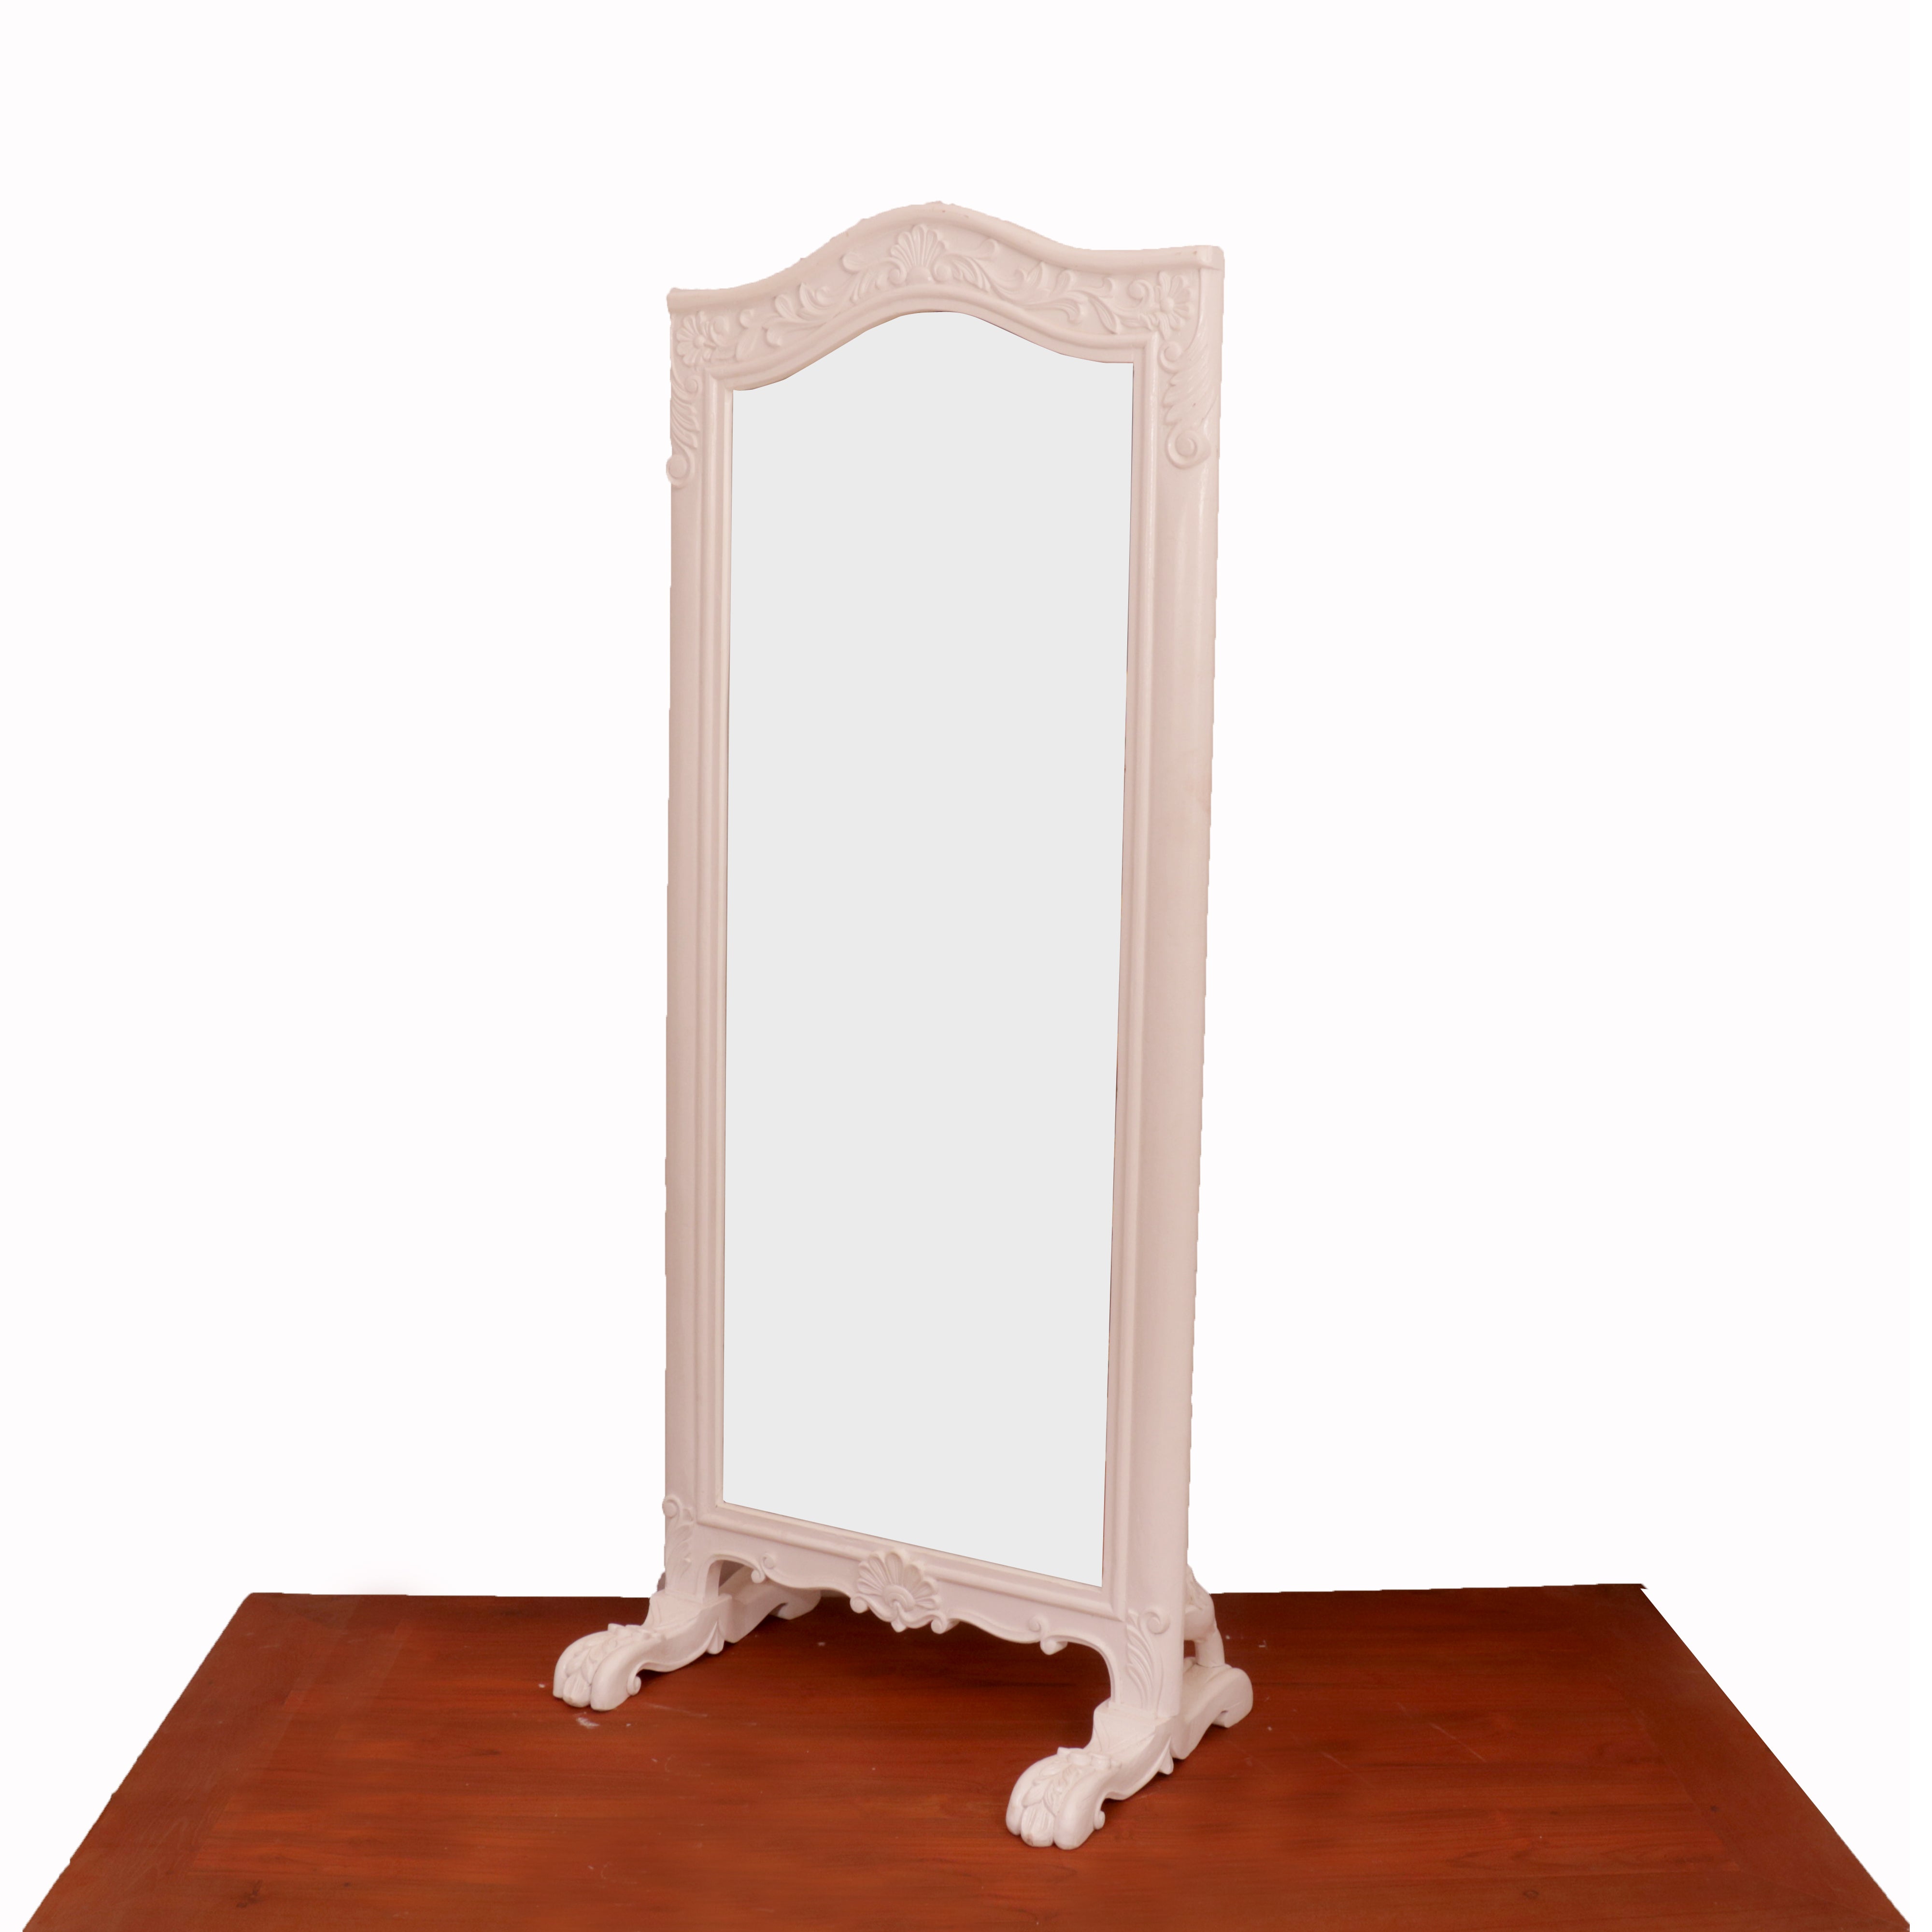 White Wooden Standing Mirror Mirror